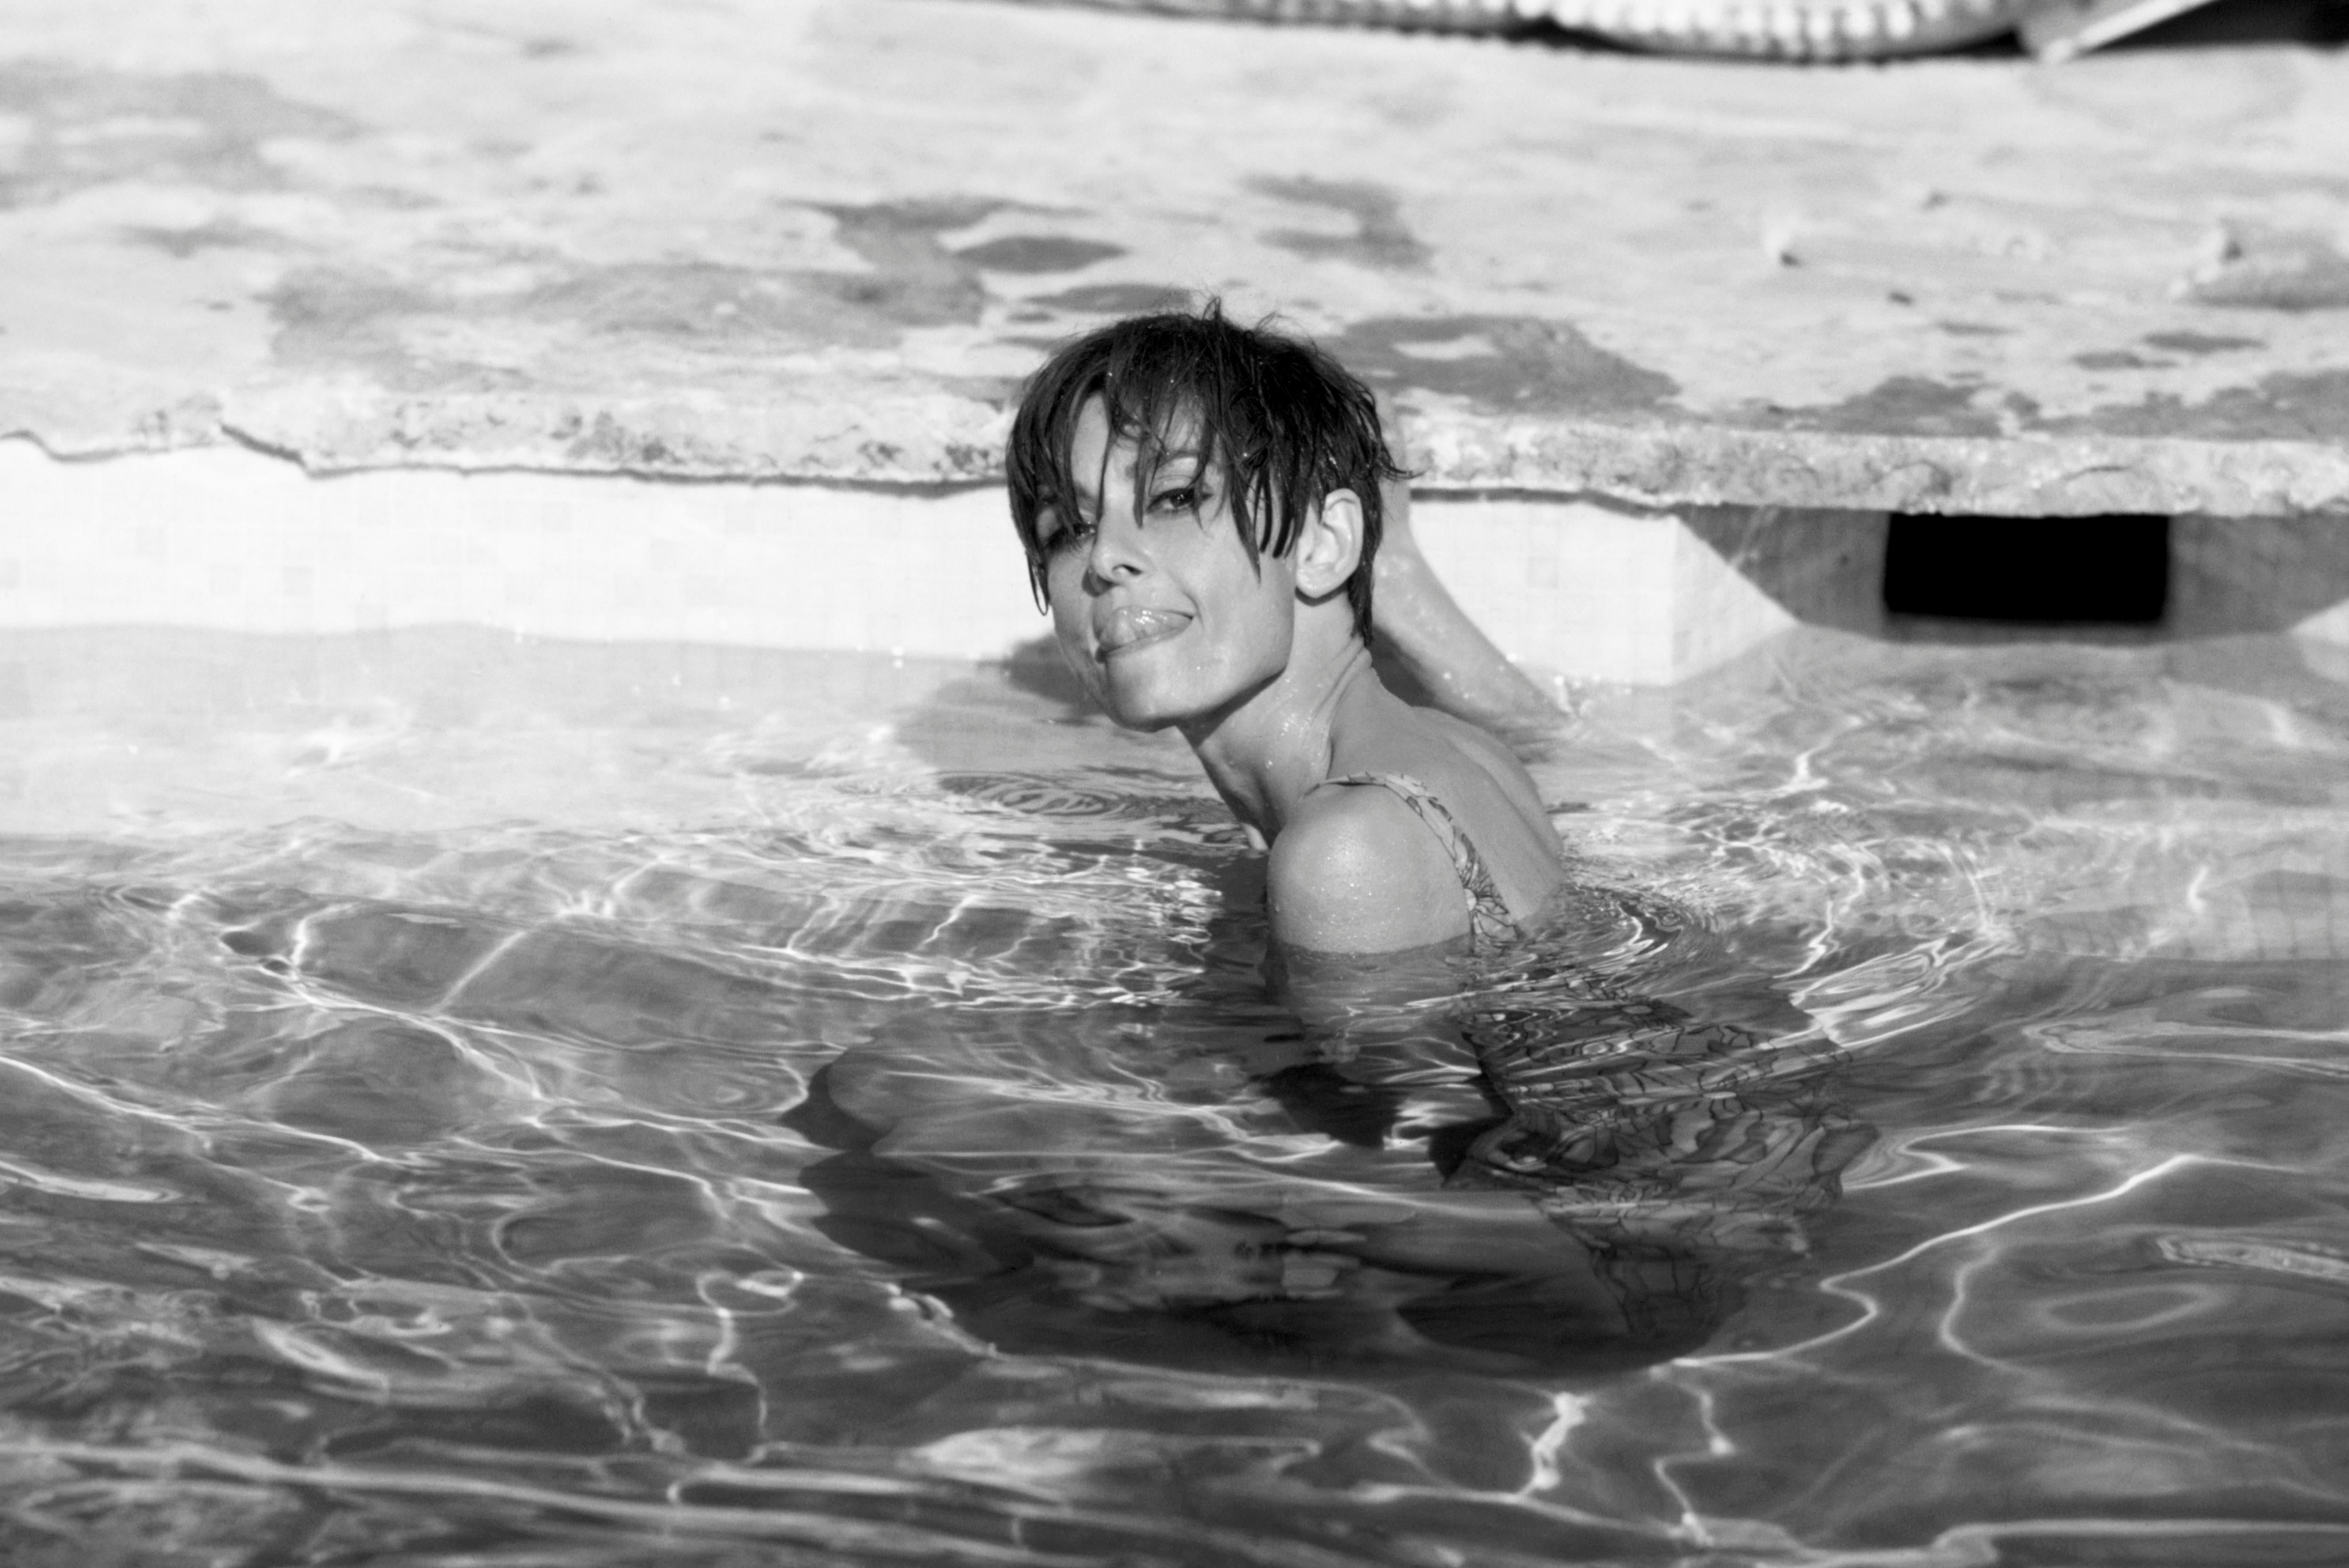 Audrey Hepburn in Pool